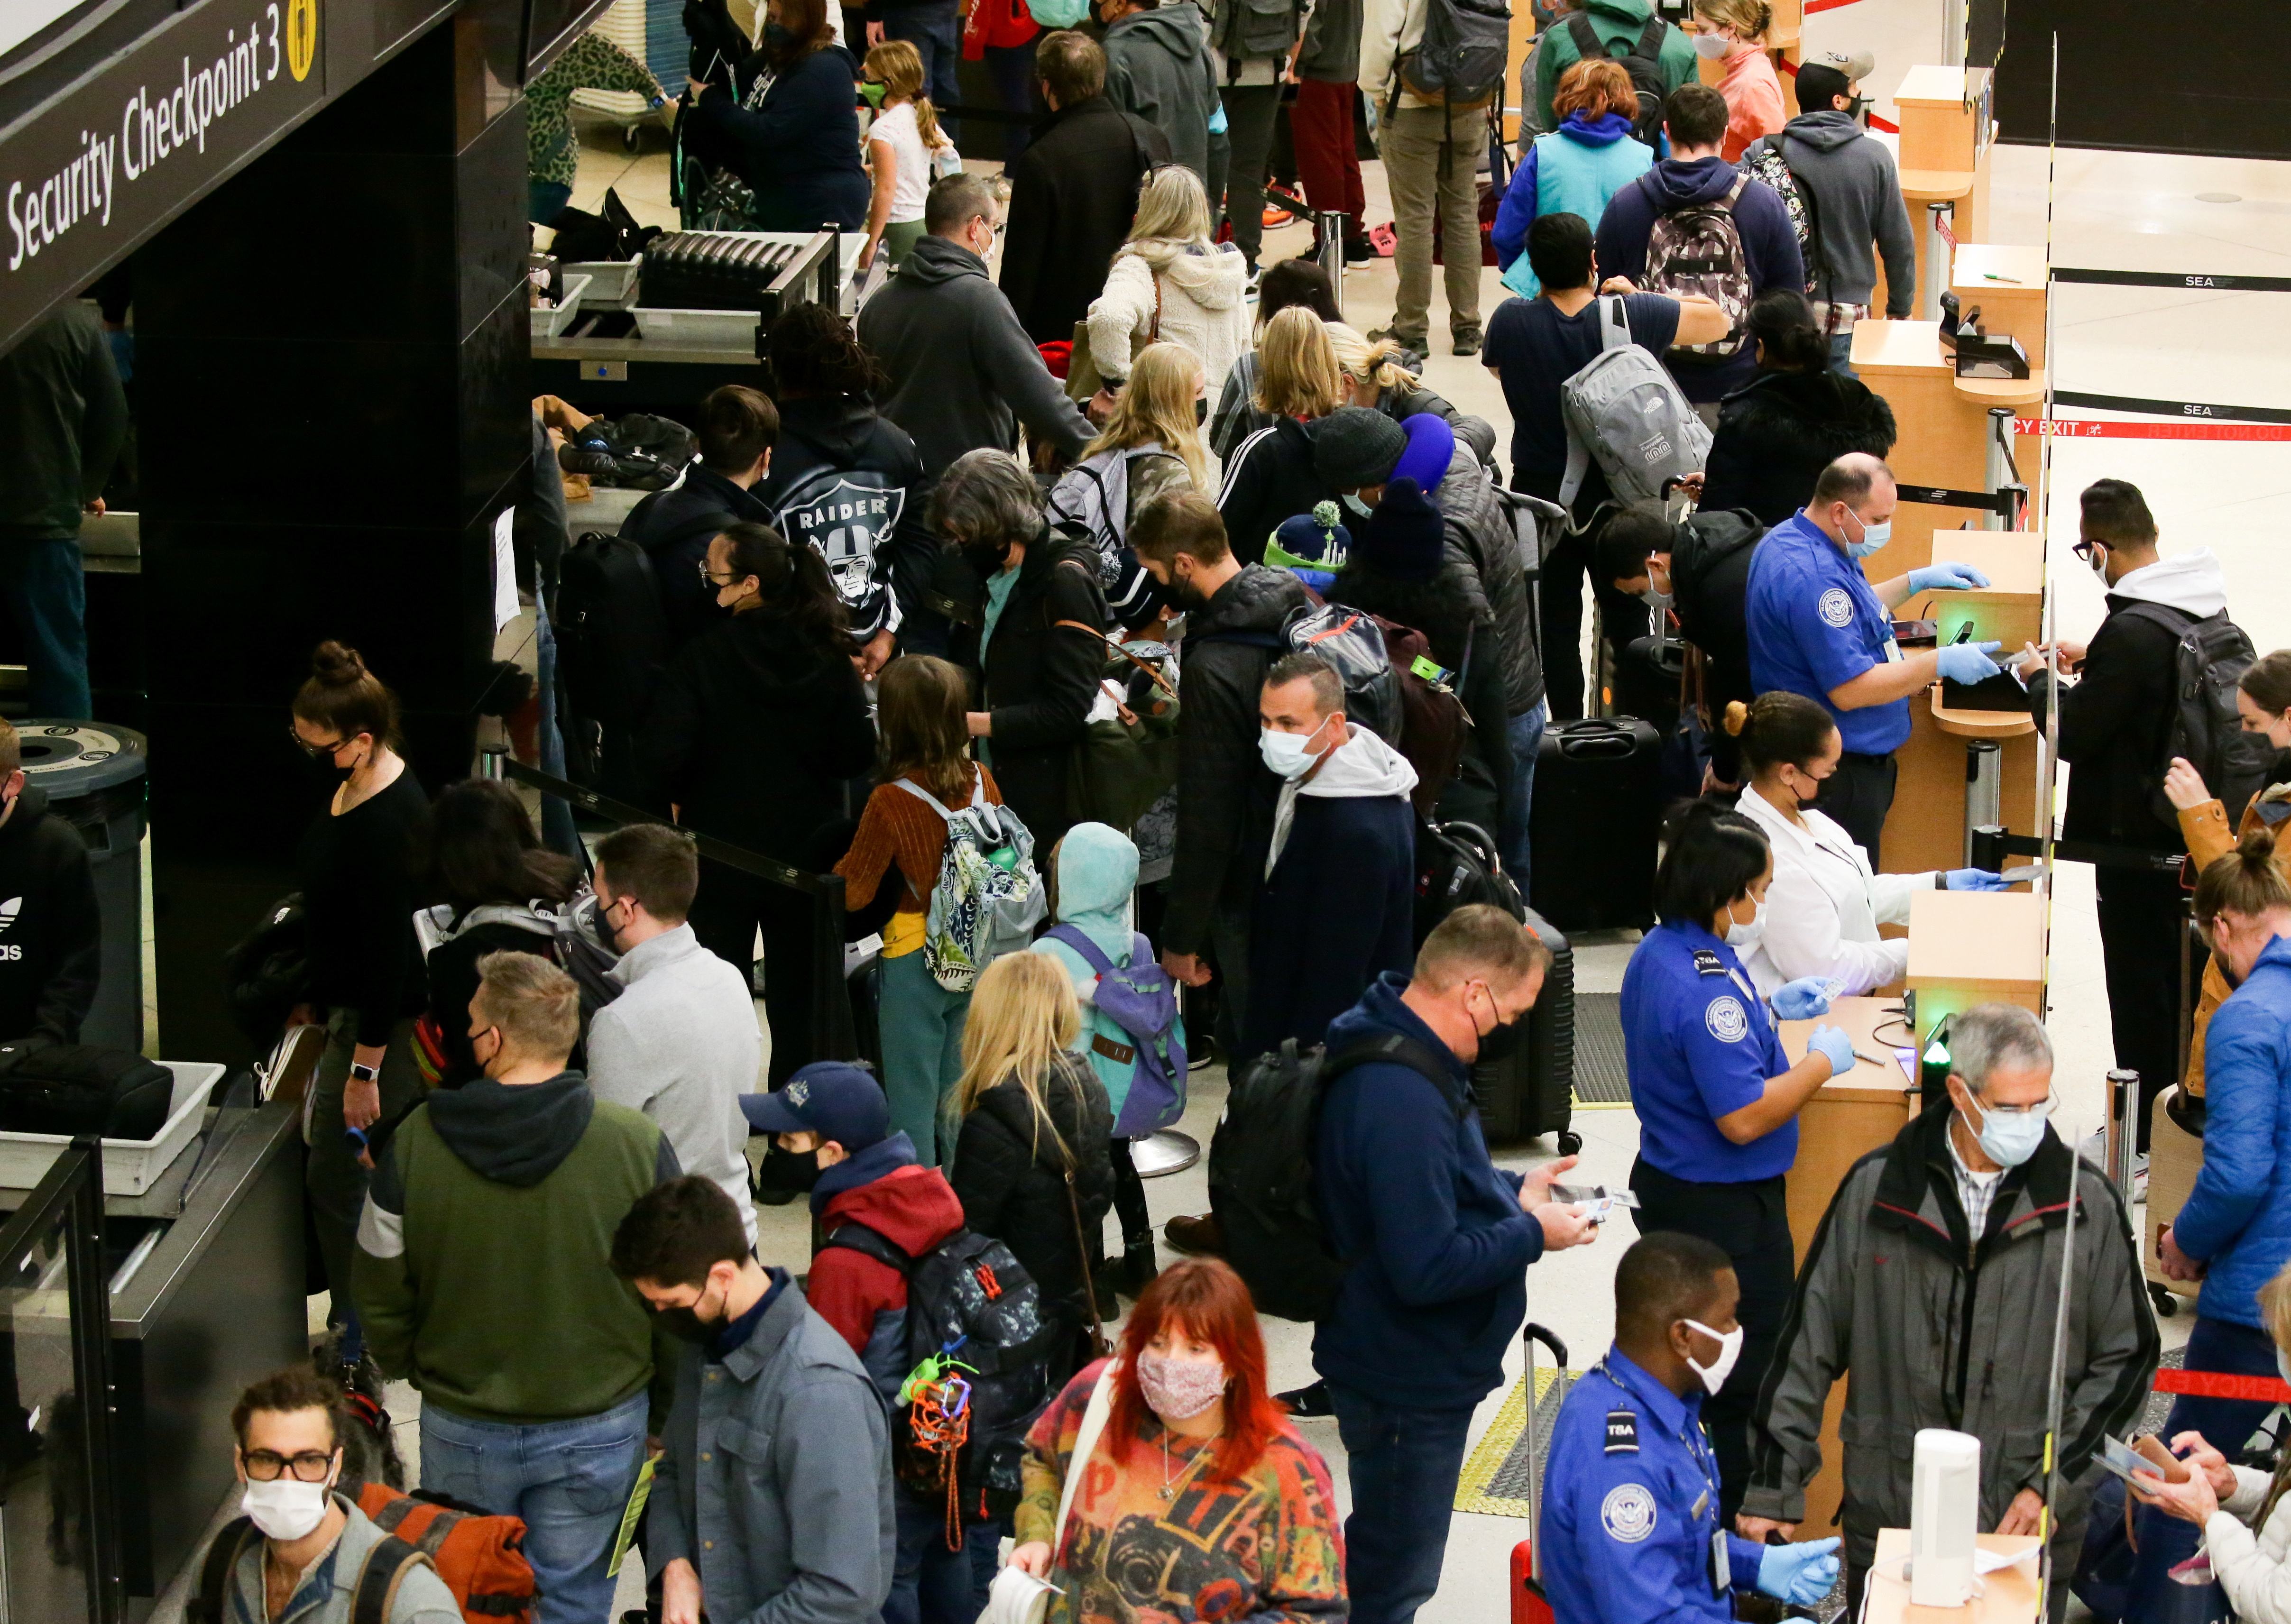 Udhëtarët presin të përpunohen përmes një postblloku sigurie në Aeroportin Ndërkombëtar Seattle-Tacoma përpara festës së Falënderimeve në Seattle, Uashington, SHBA, 24 nëntor 2021. REUTERS/Lindsey Wasson